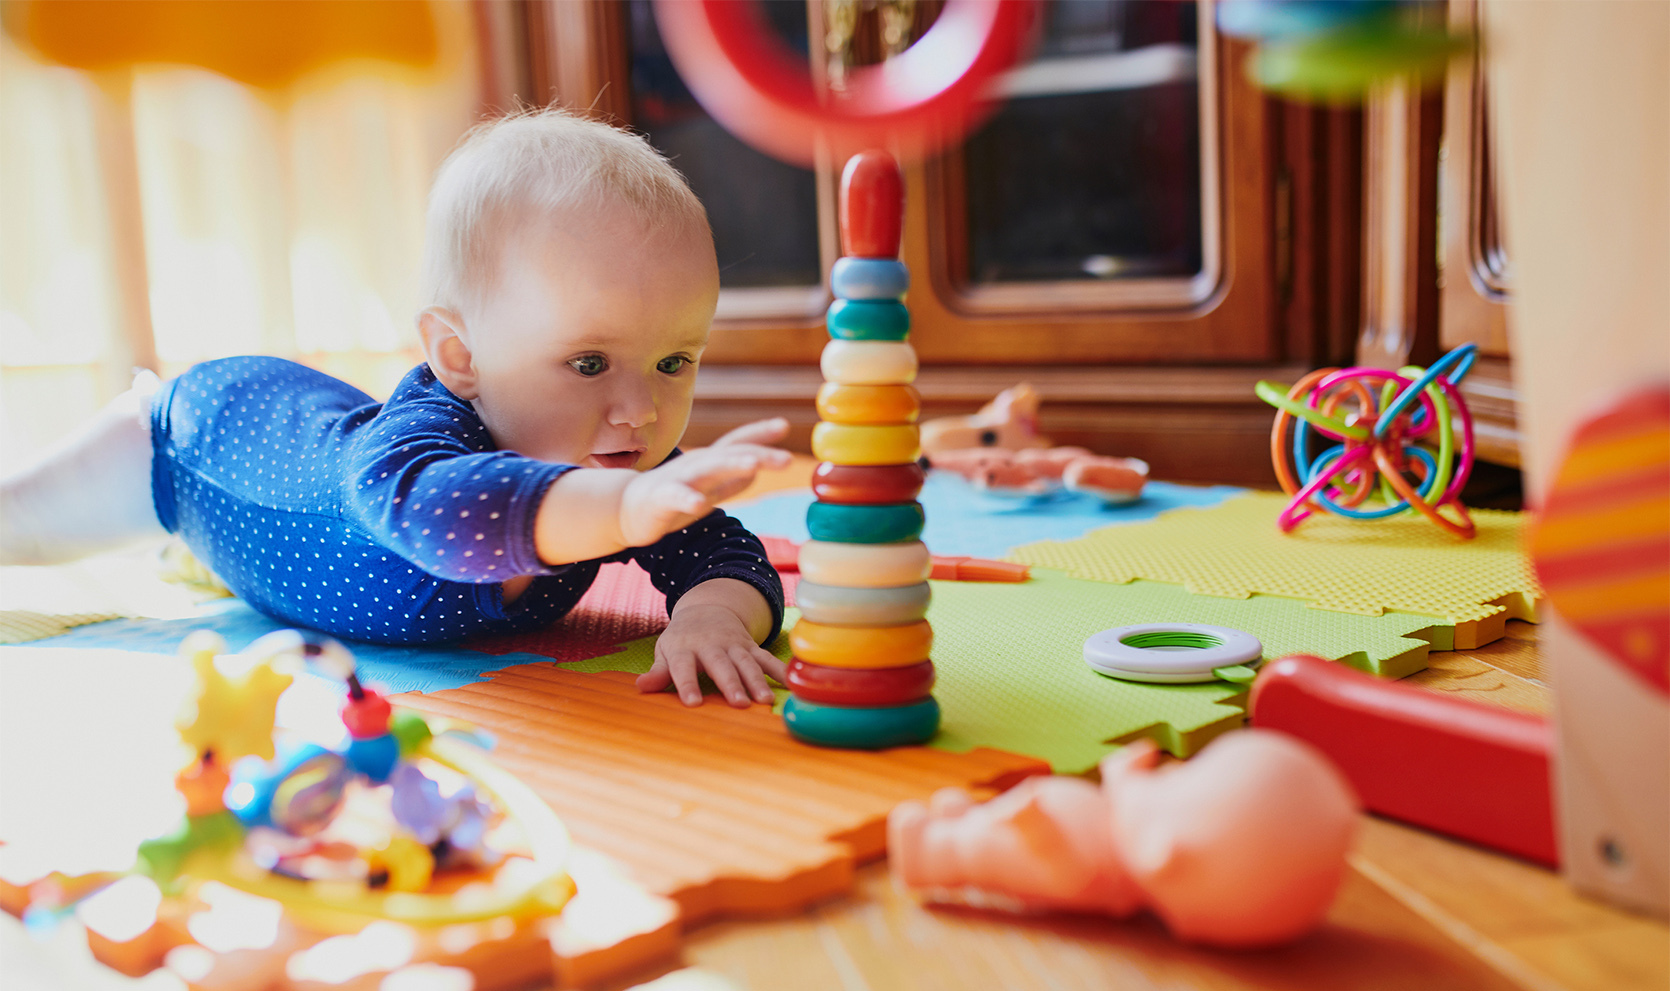 Groźne zabawki dla niemowląt - jak je rozpoznać? /fot. iStock